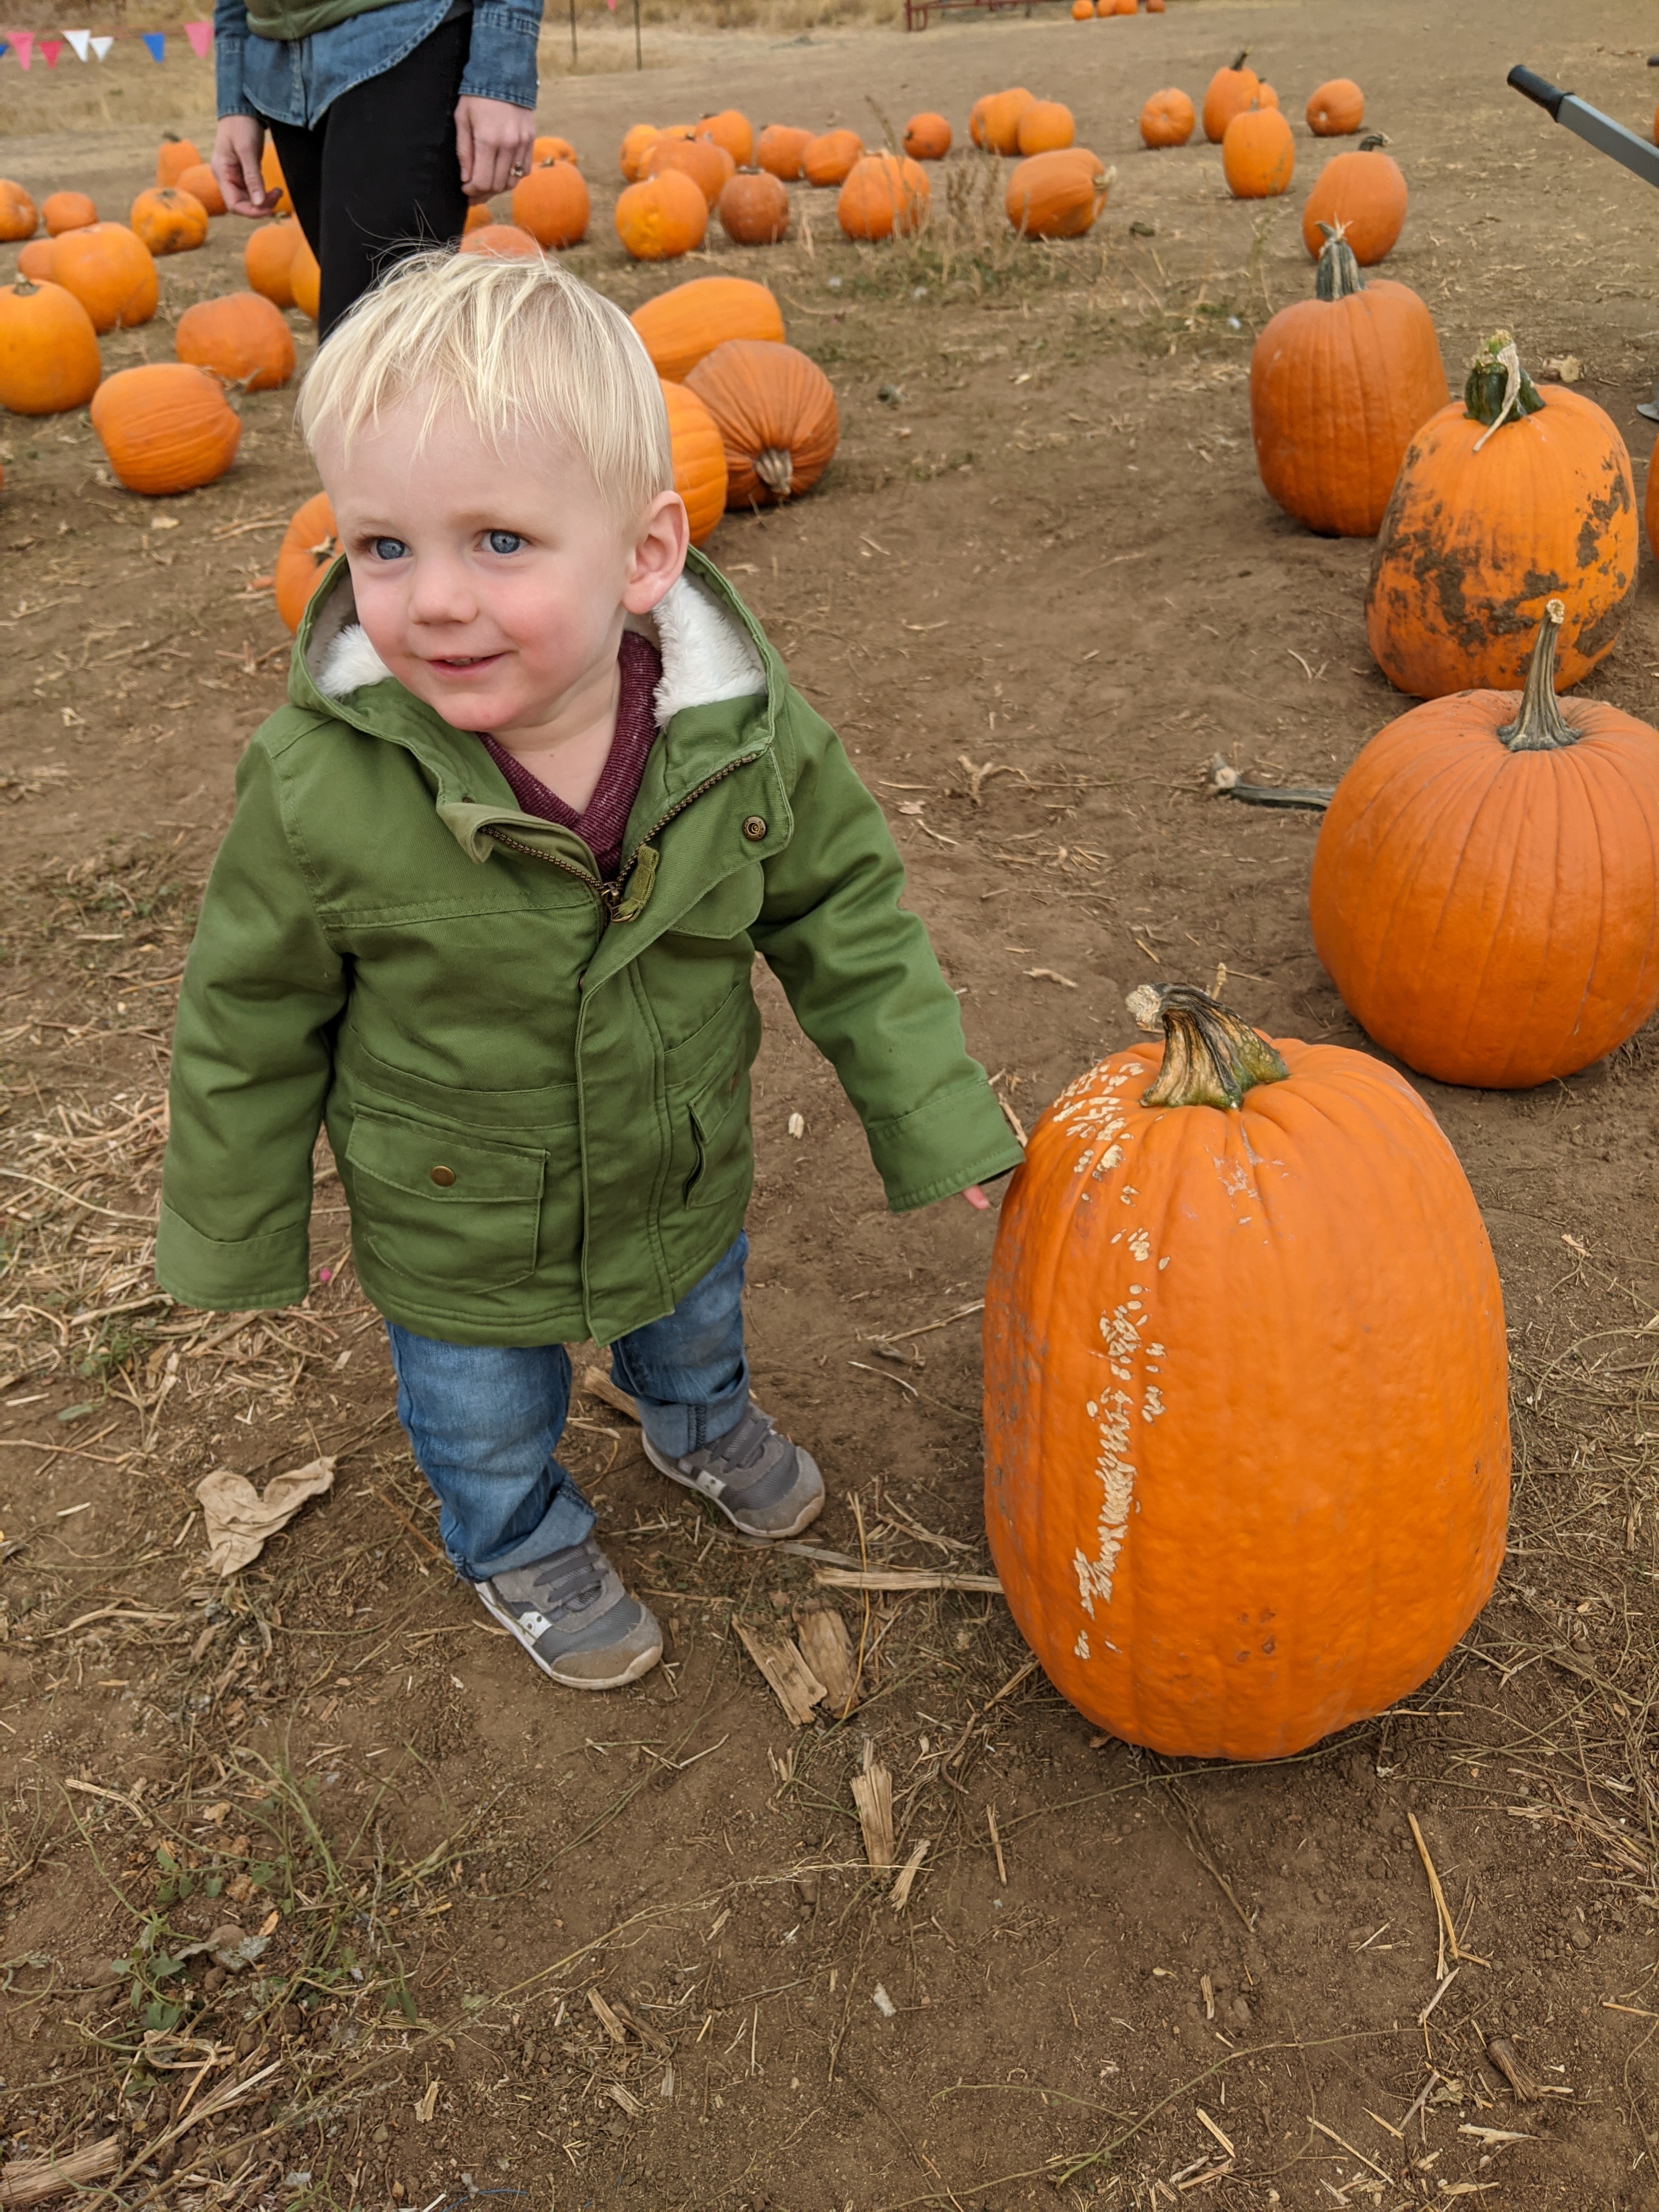 Owen at the pumpkin patch.